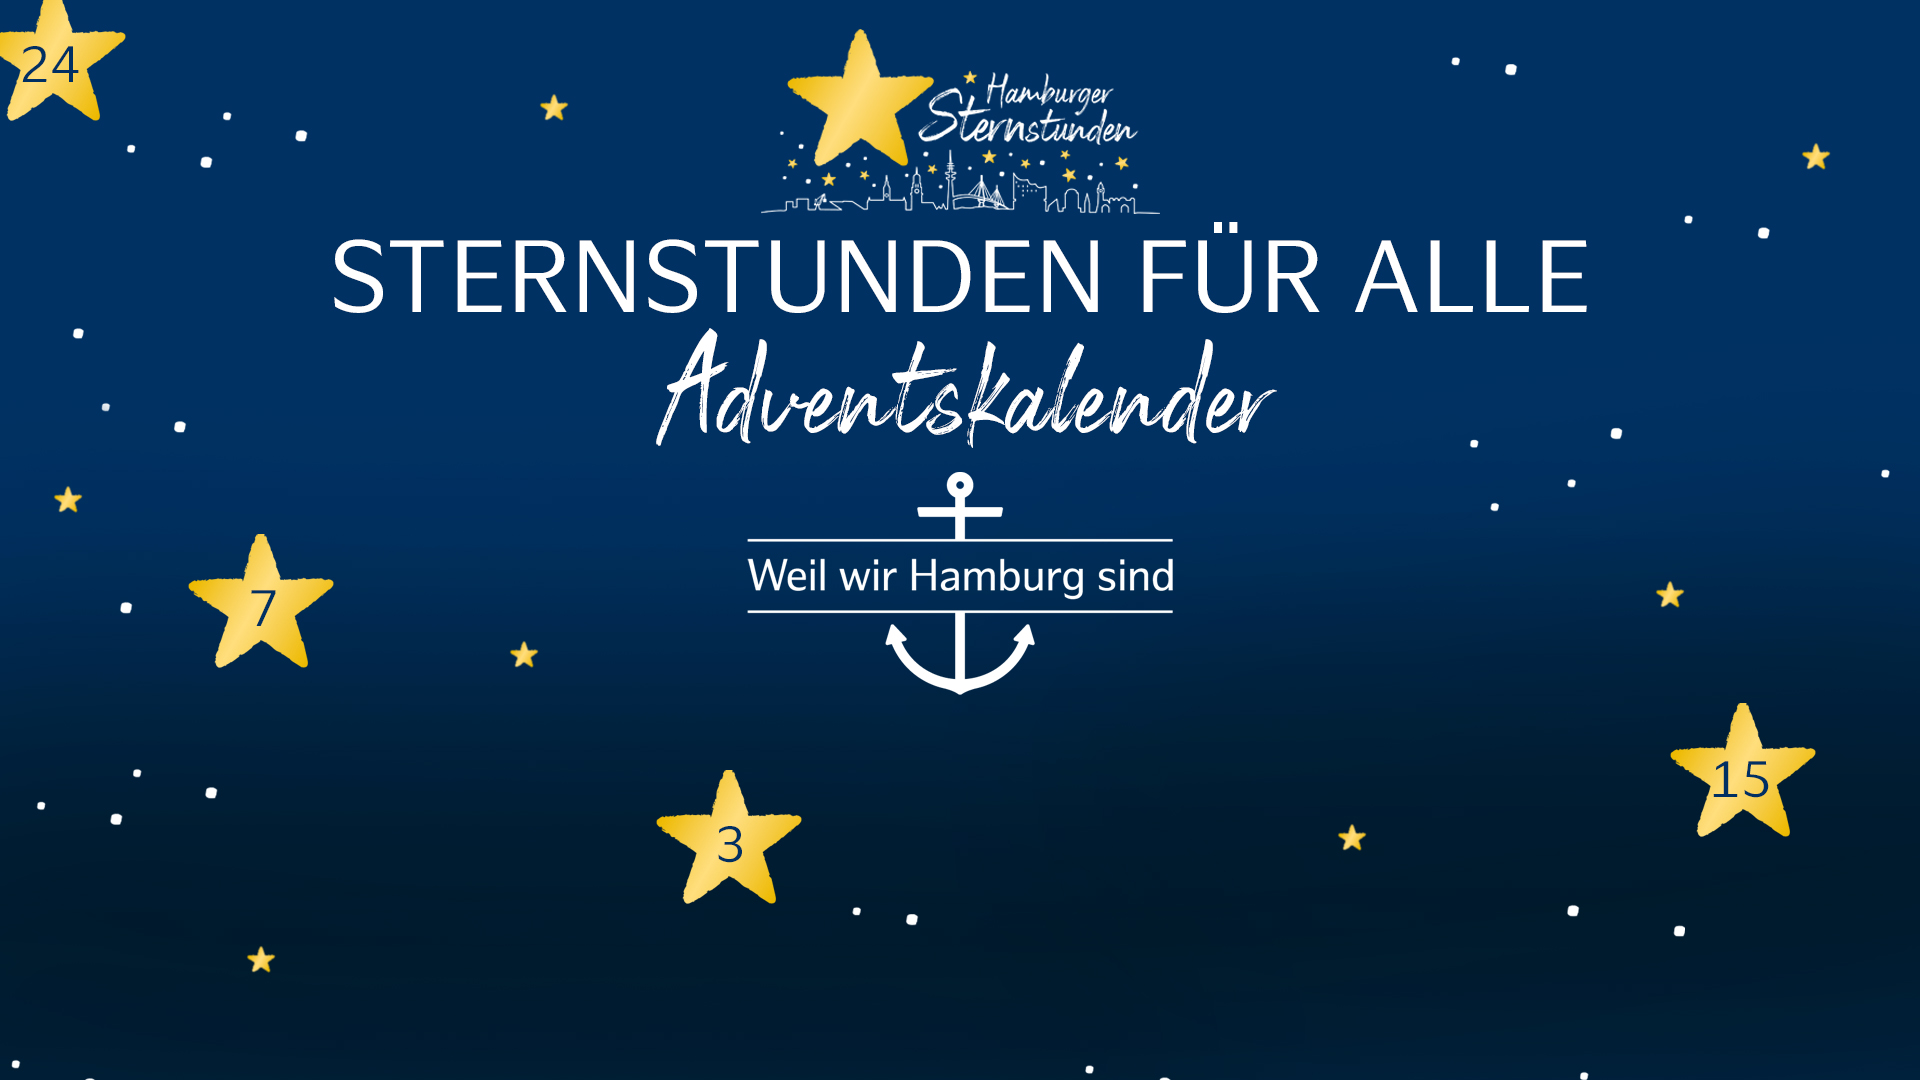 Der Charity-Adventskalender von Hamburg Tourismus